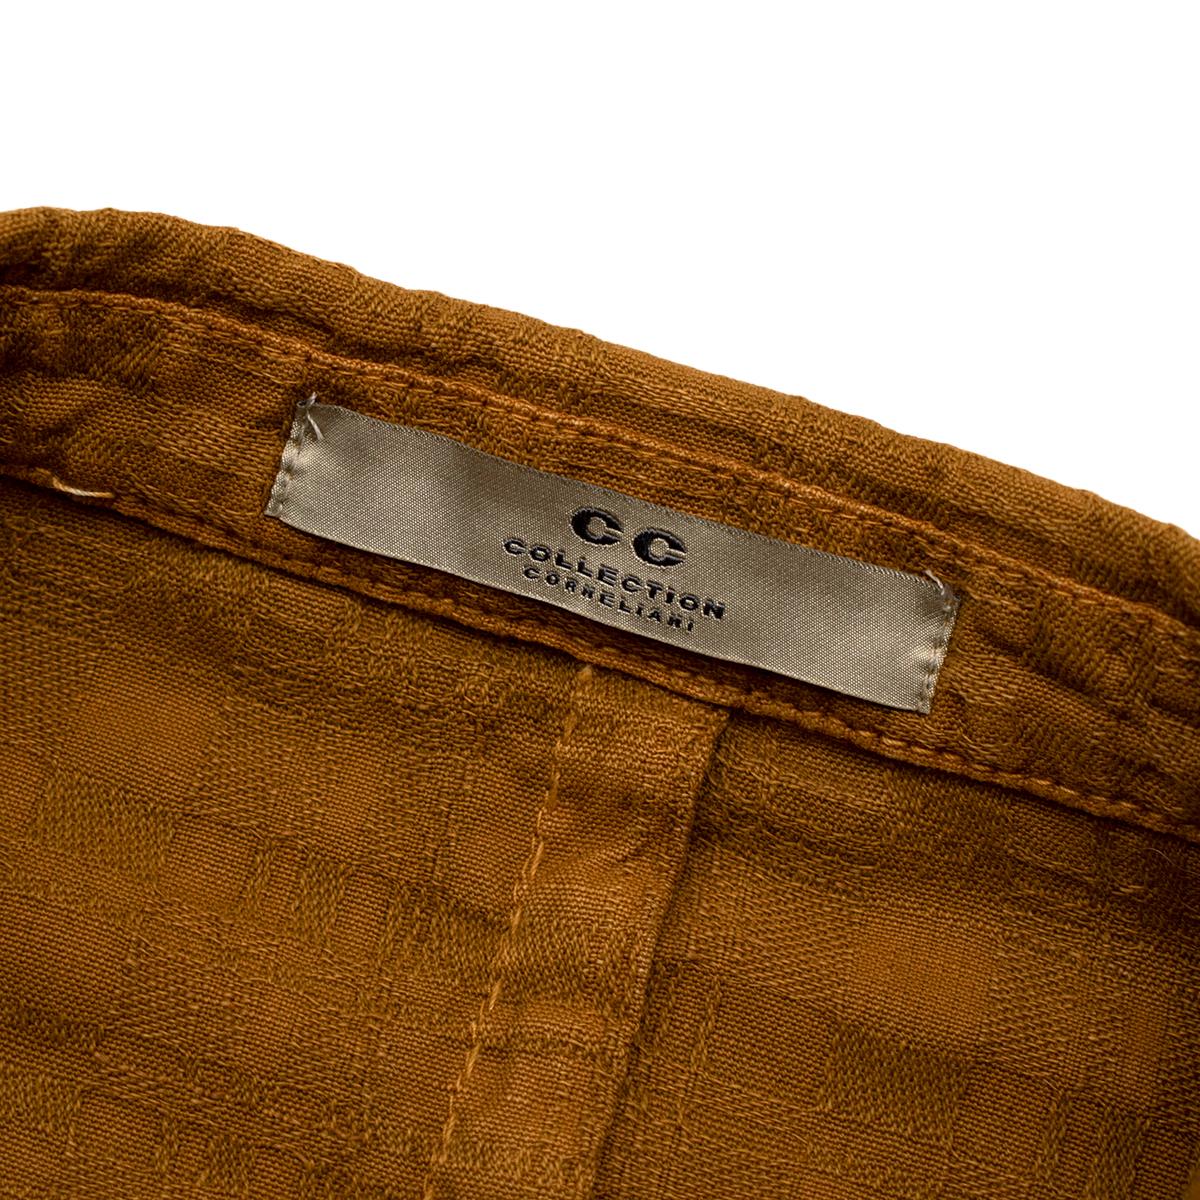 cc collection corneliani jacket